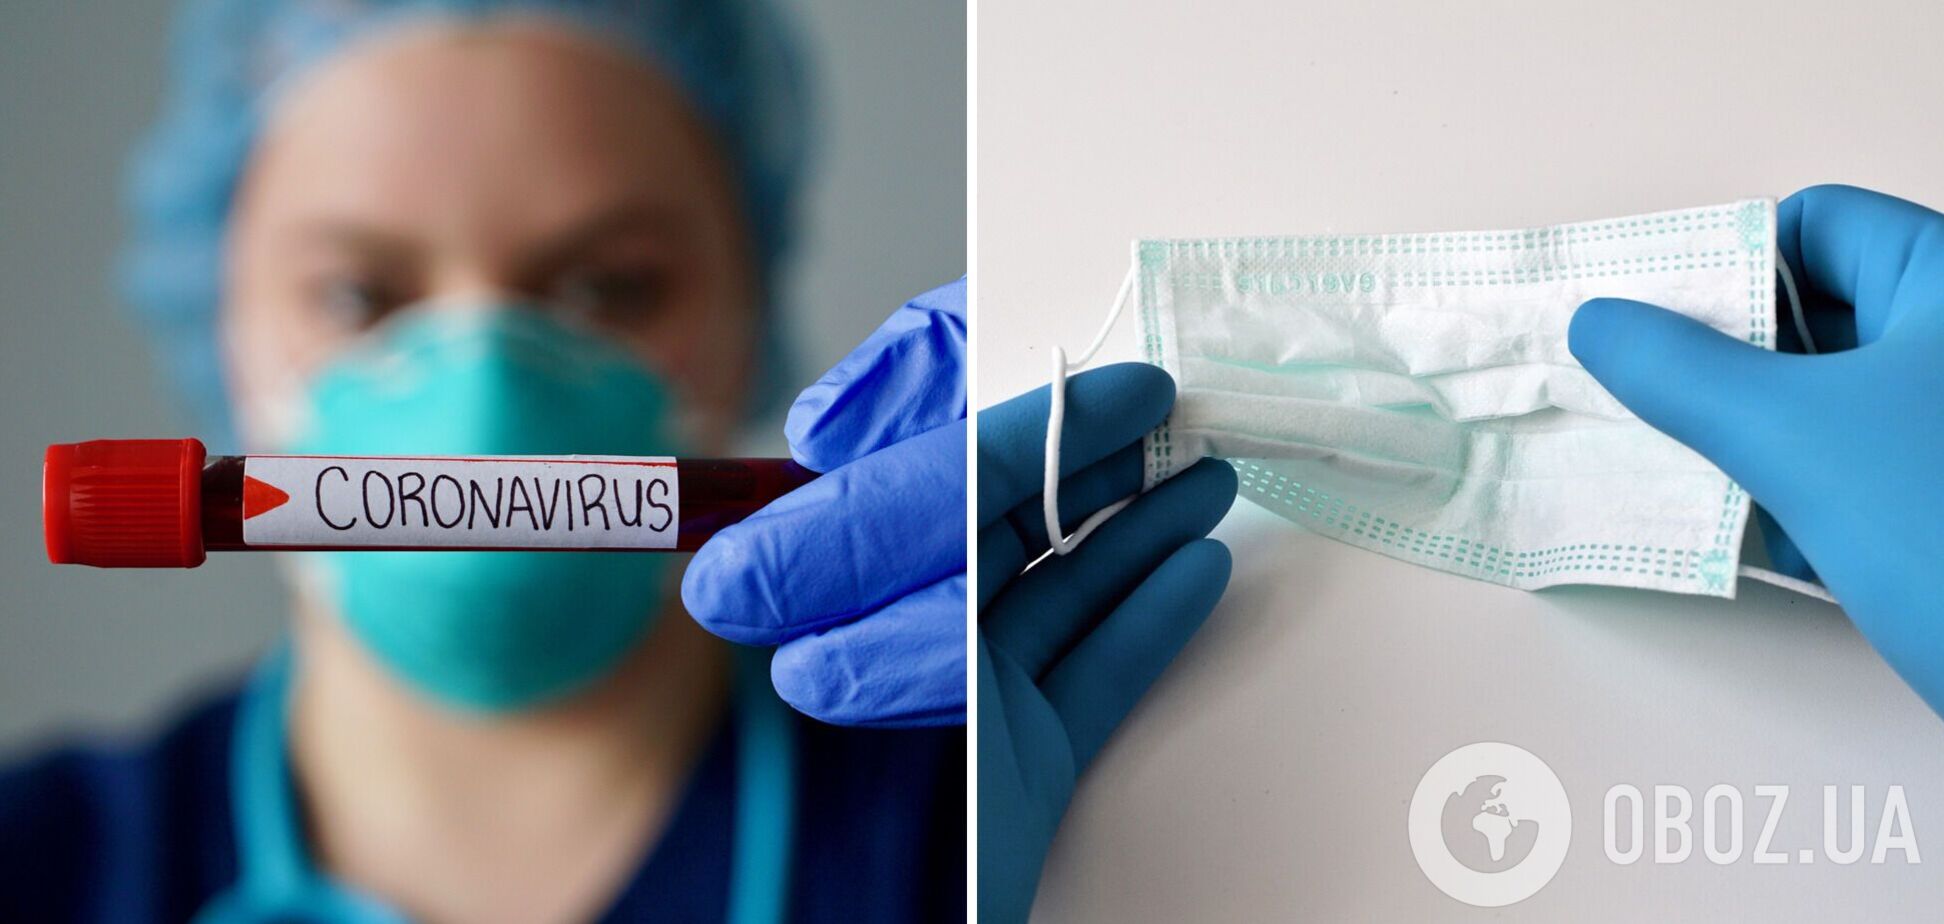 В Украине за сутки коронавирусом заболели более 13 тыс. человек, умерли 436 пациентов